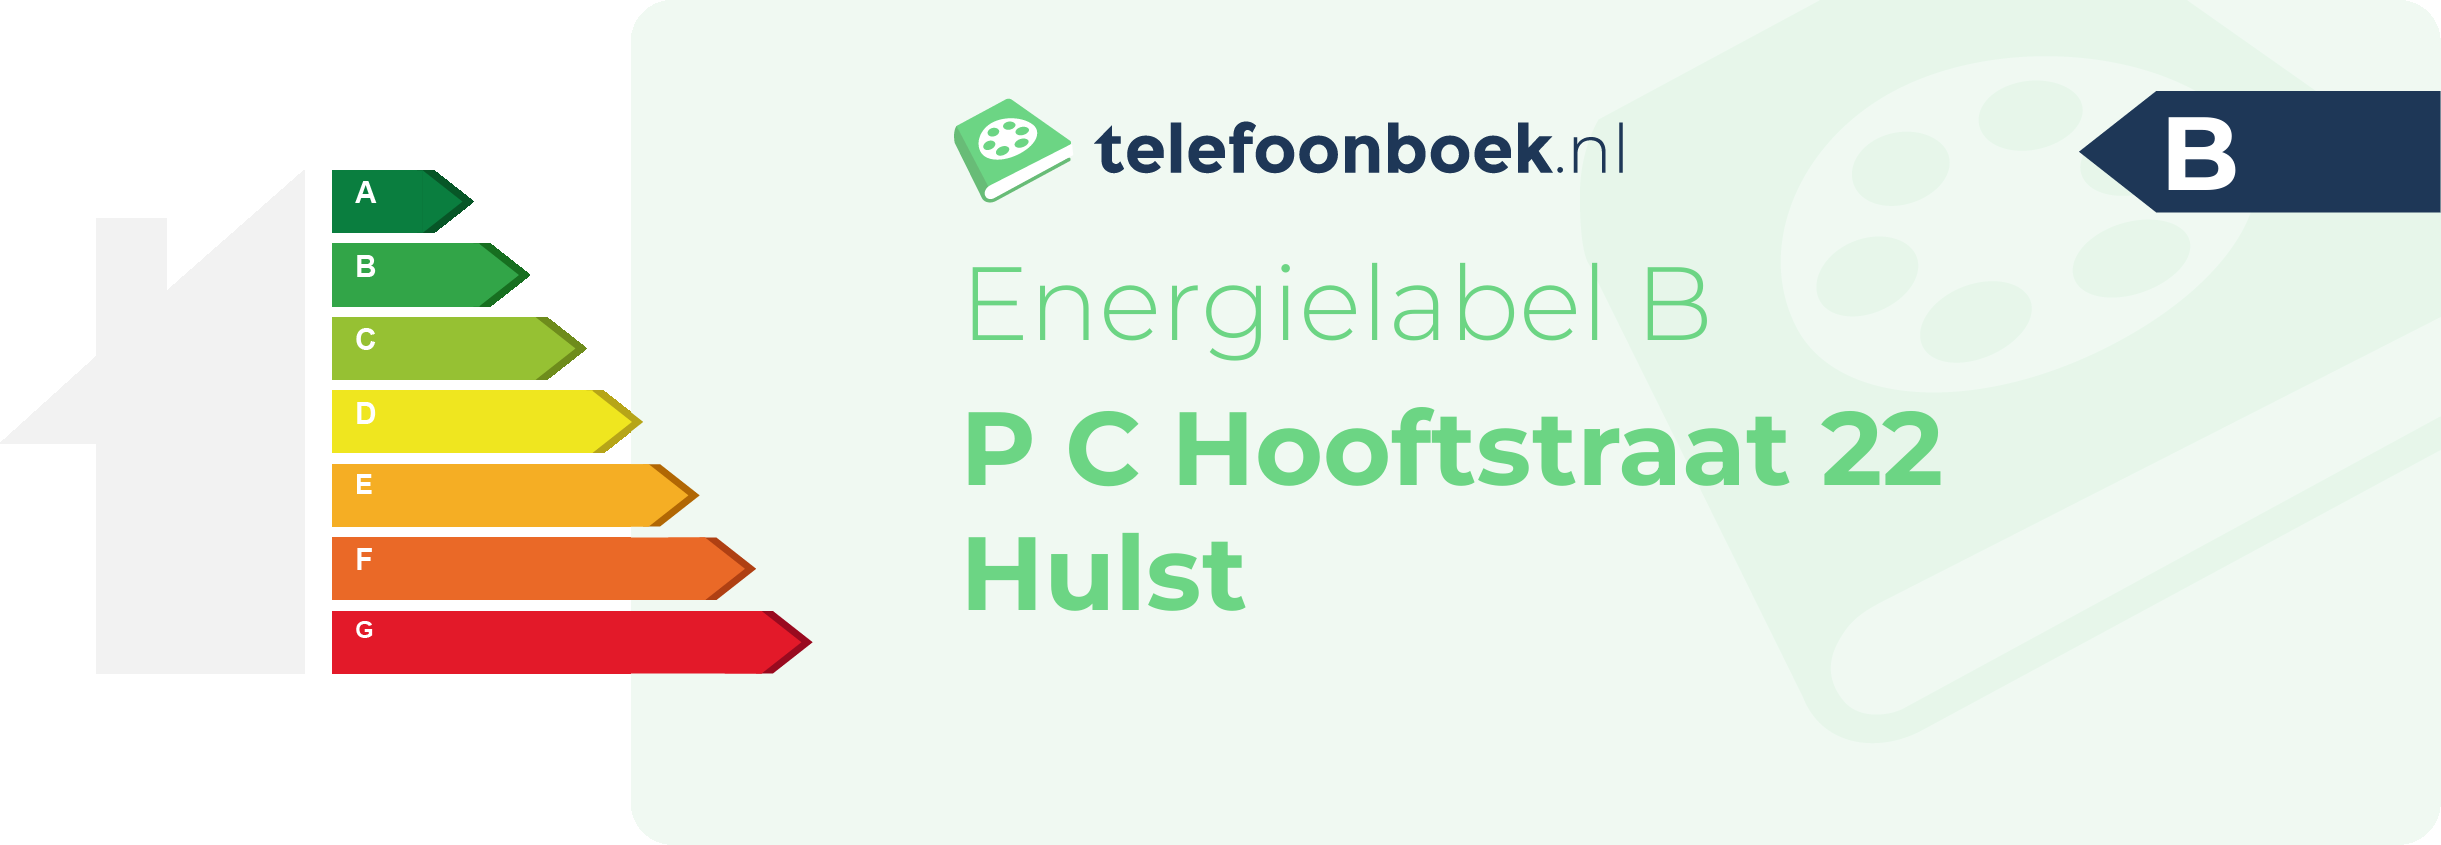 Energielabel P C Hooftstraat 22 Hulst